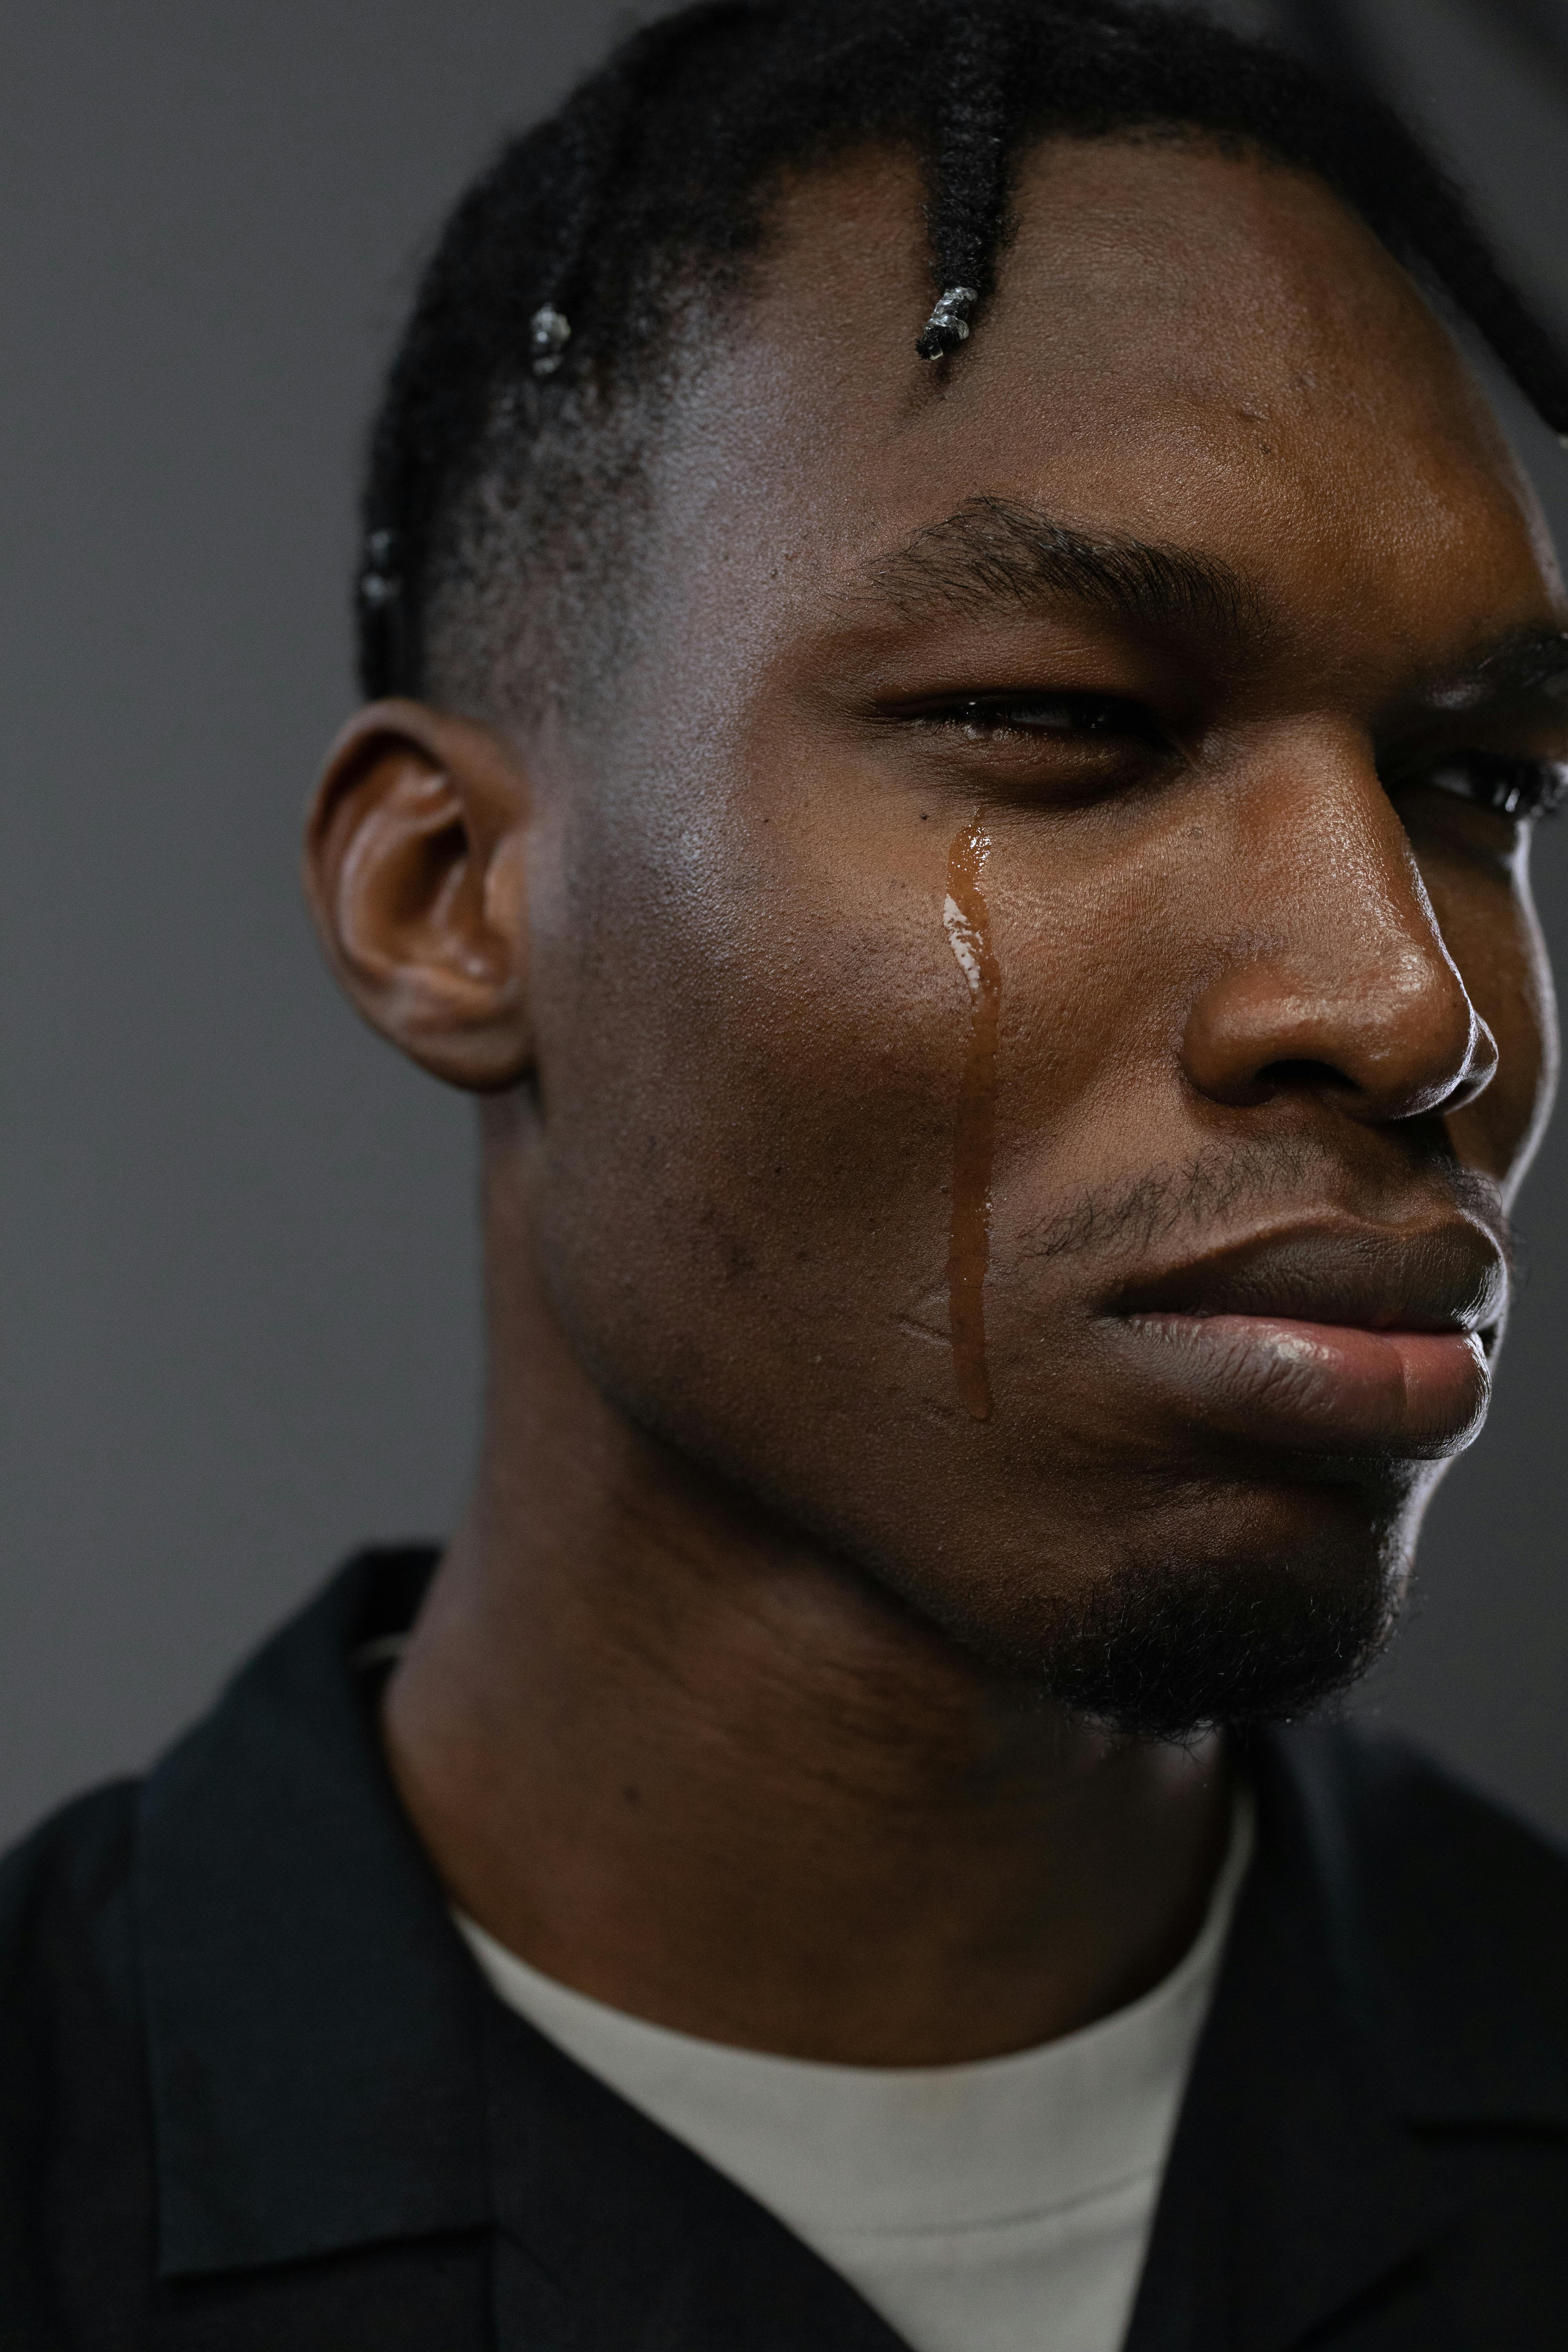 Ein weinender Mann | Quelle: Pexels